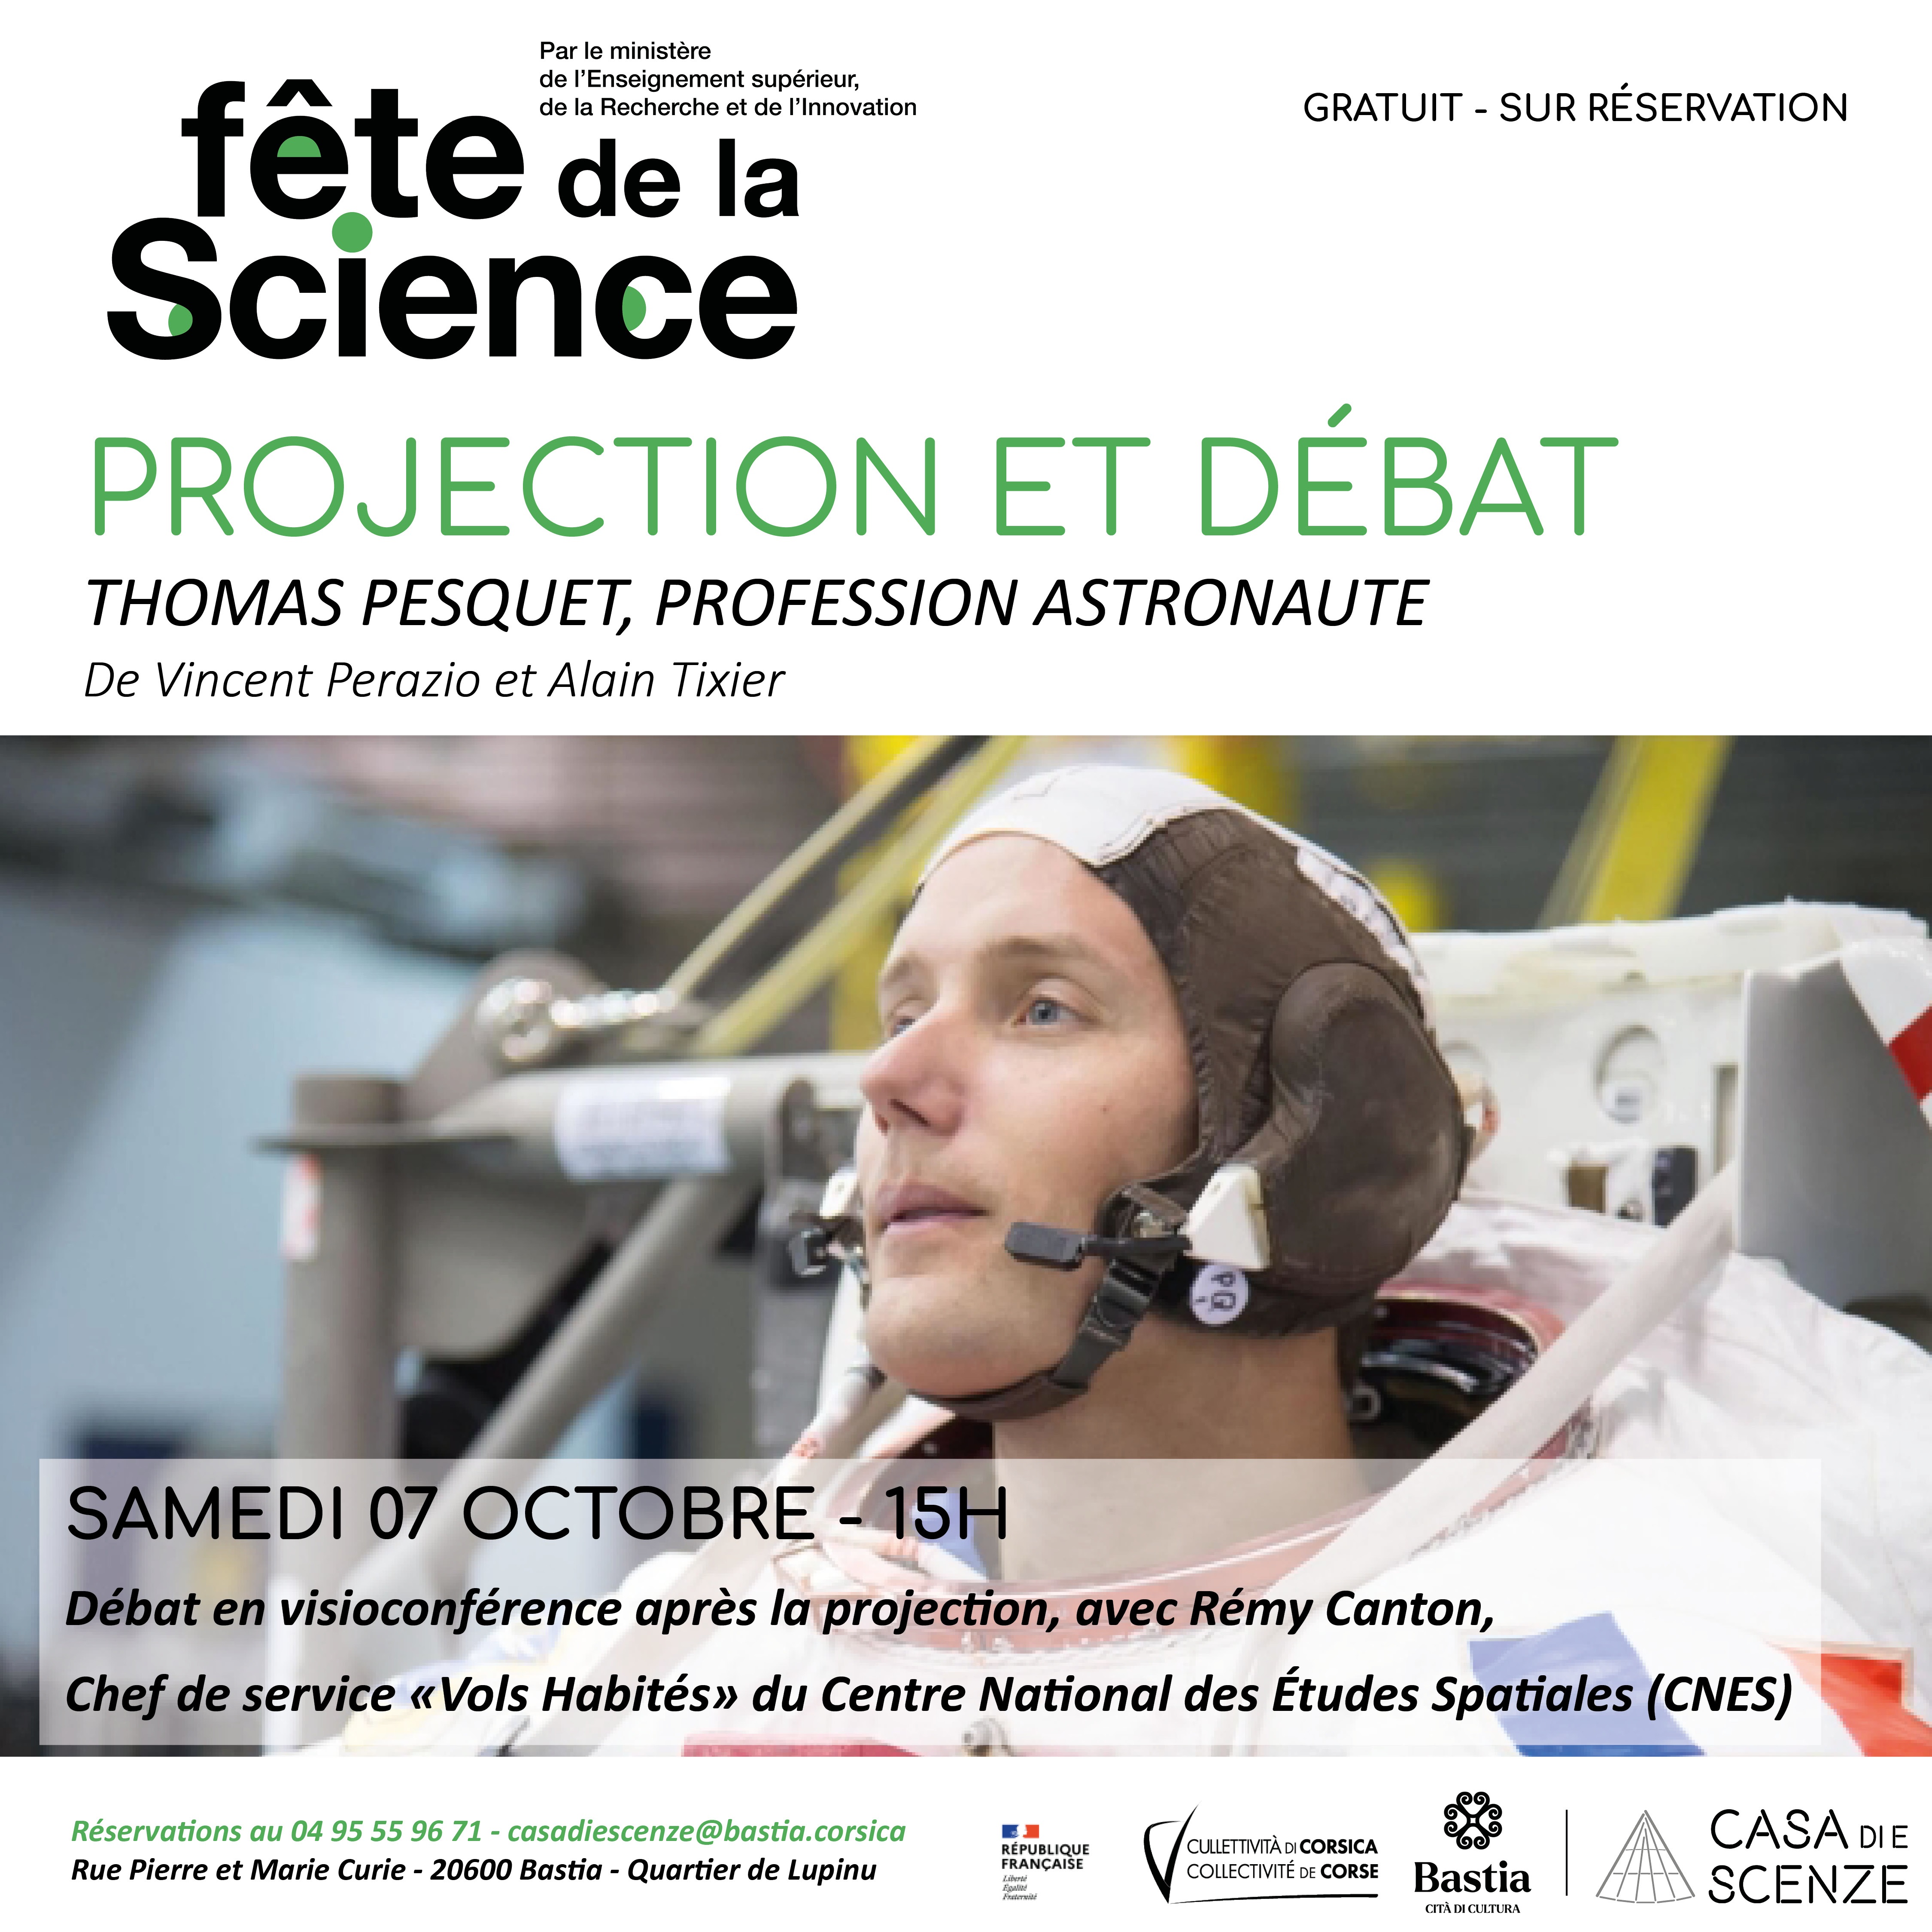 "Thomas Pesquet, profession astronaute" pour la Fête de la science à Bastia